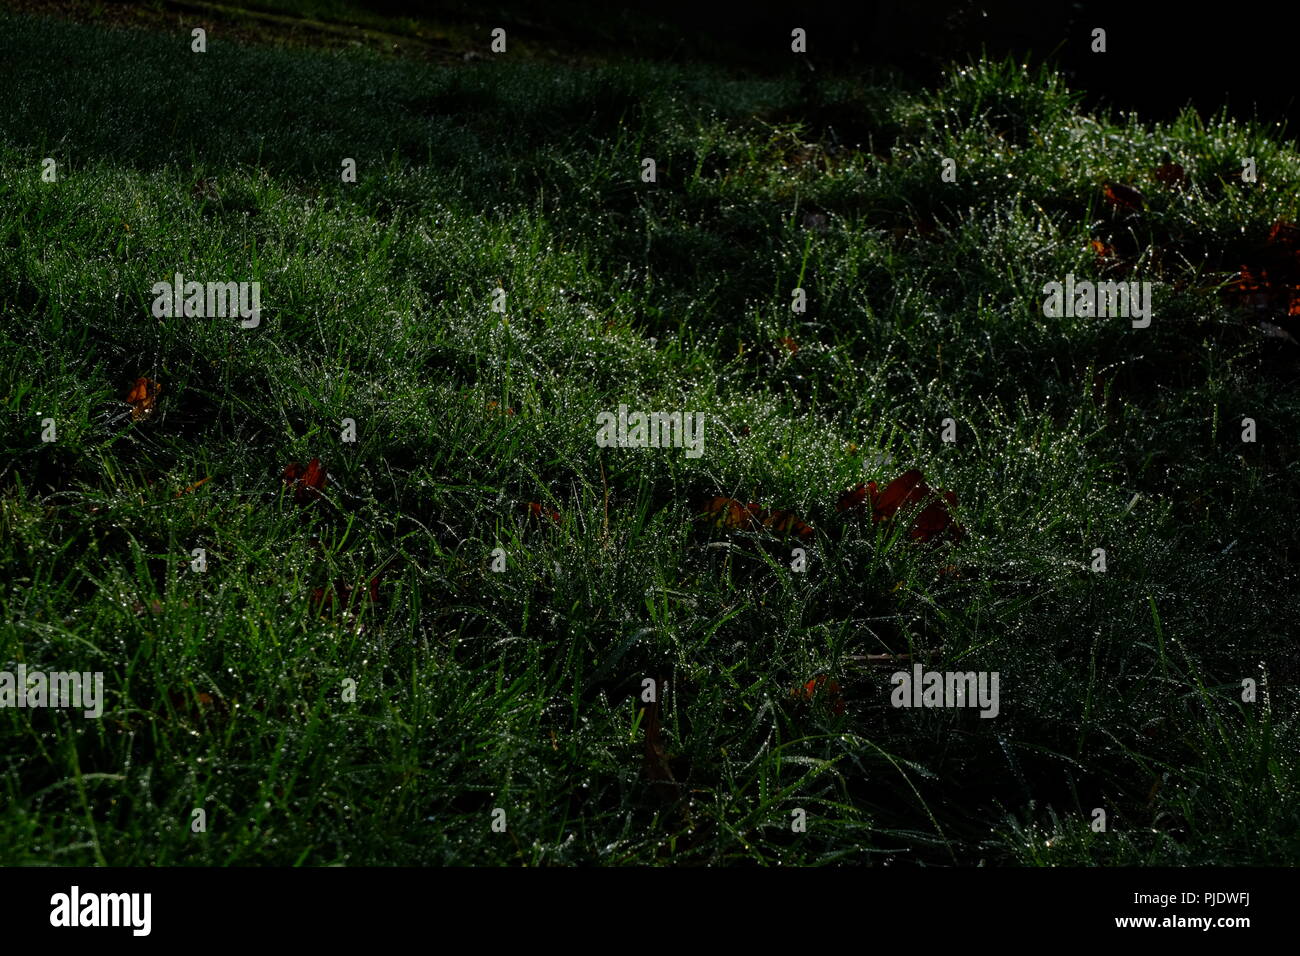 Die grüne wiese gras von einem Garten in Mol, Belgien zeigt seine Tau in einer dunklen Umgebung, wo Licht und Schatten spielen. Einige Blätter im Herbst liegen dazwischen. Stockfoto